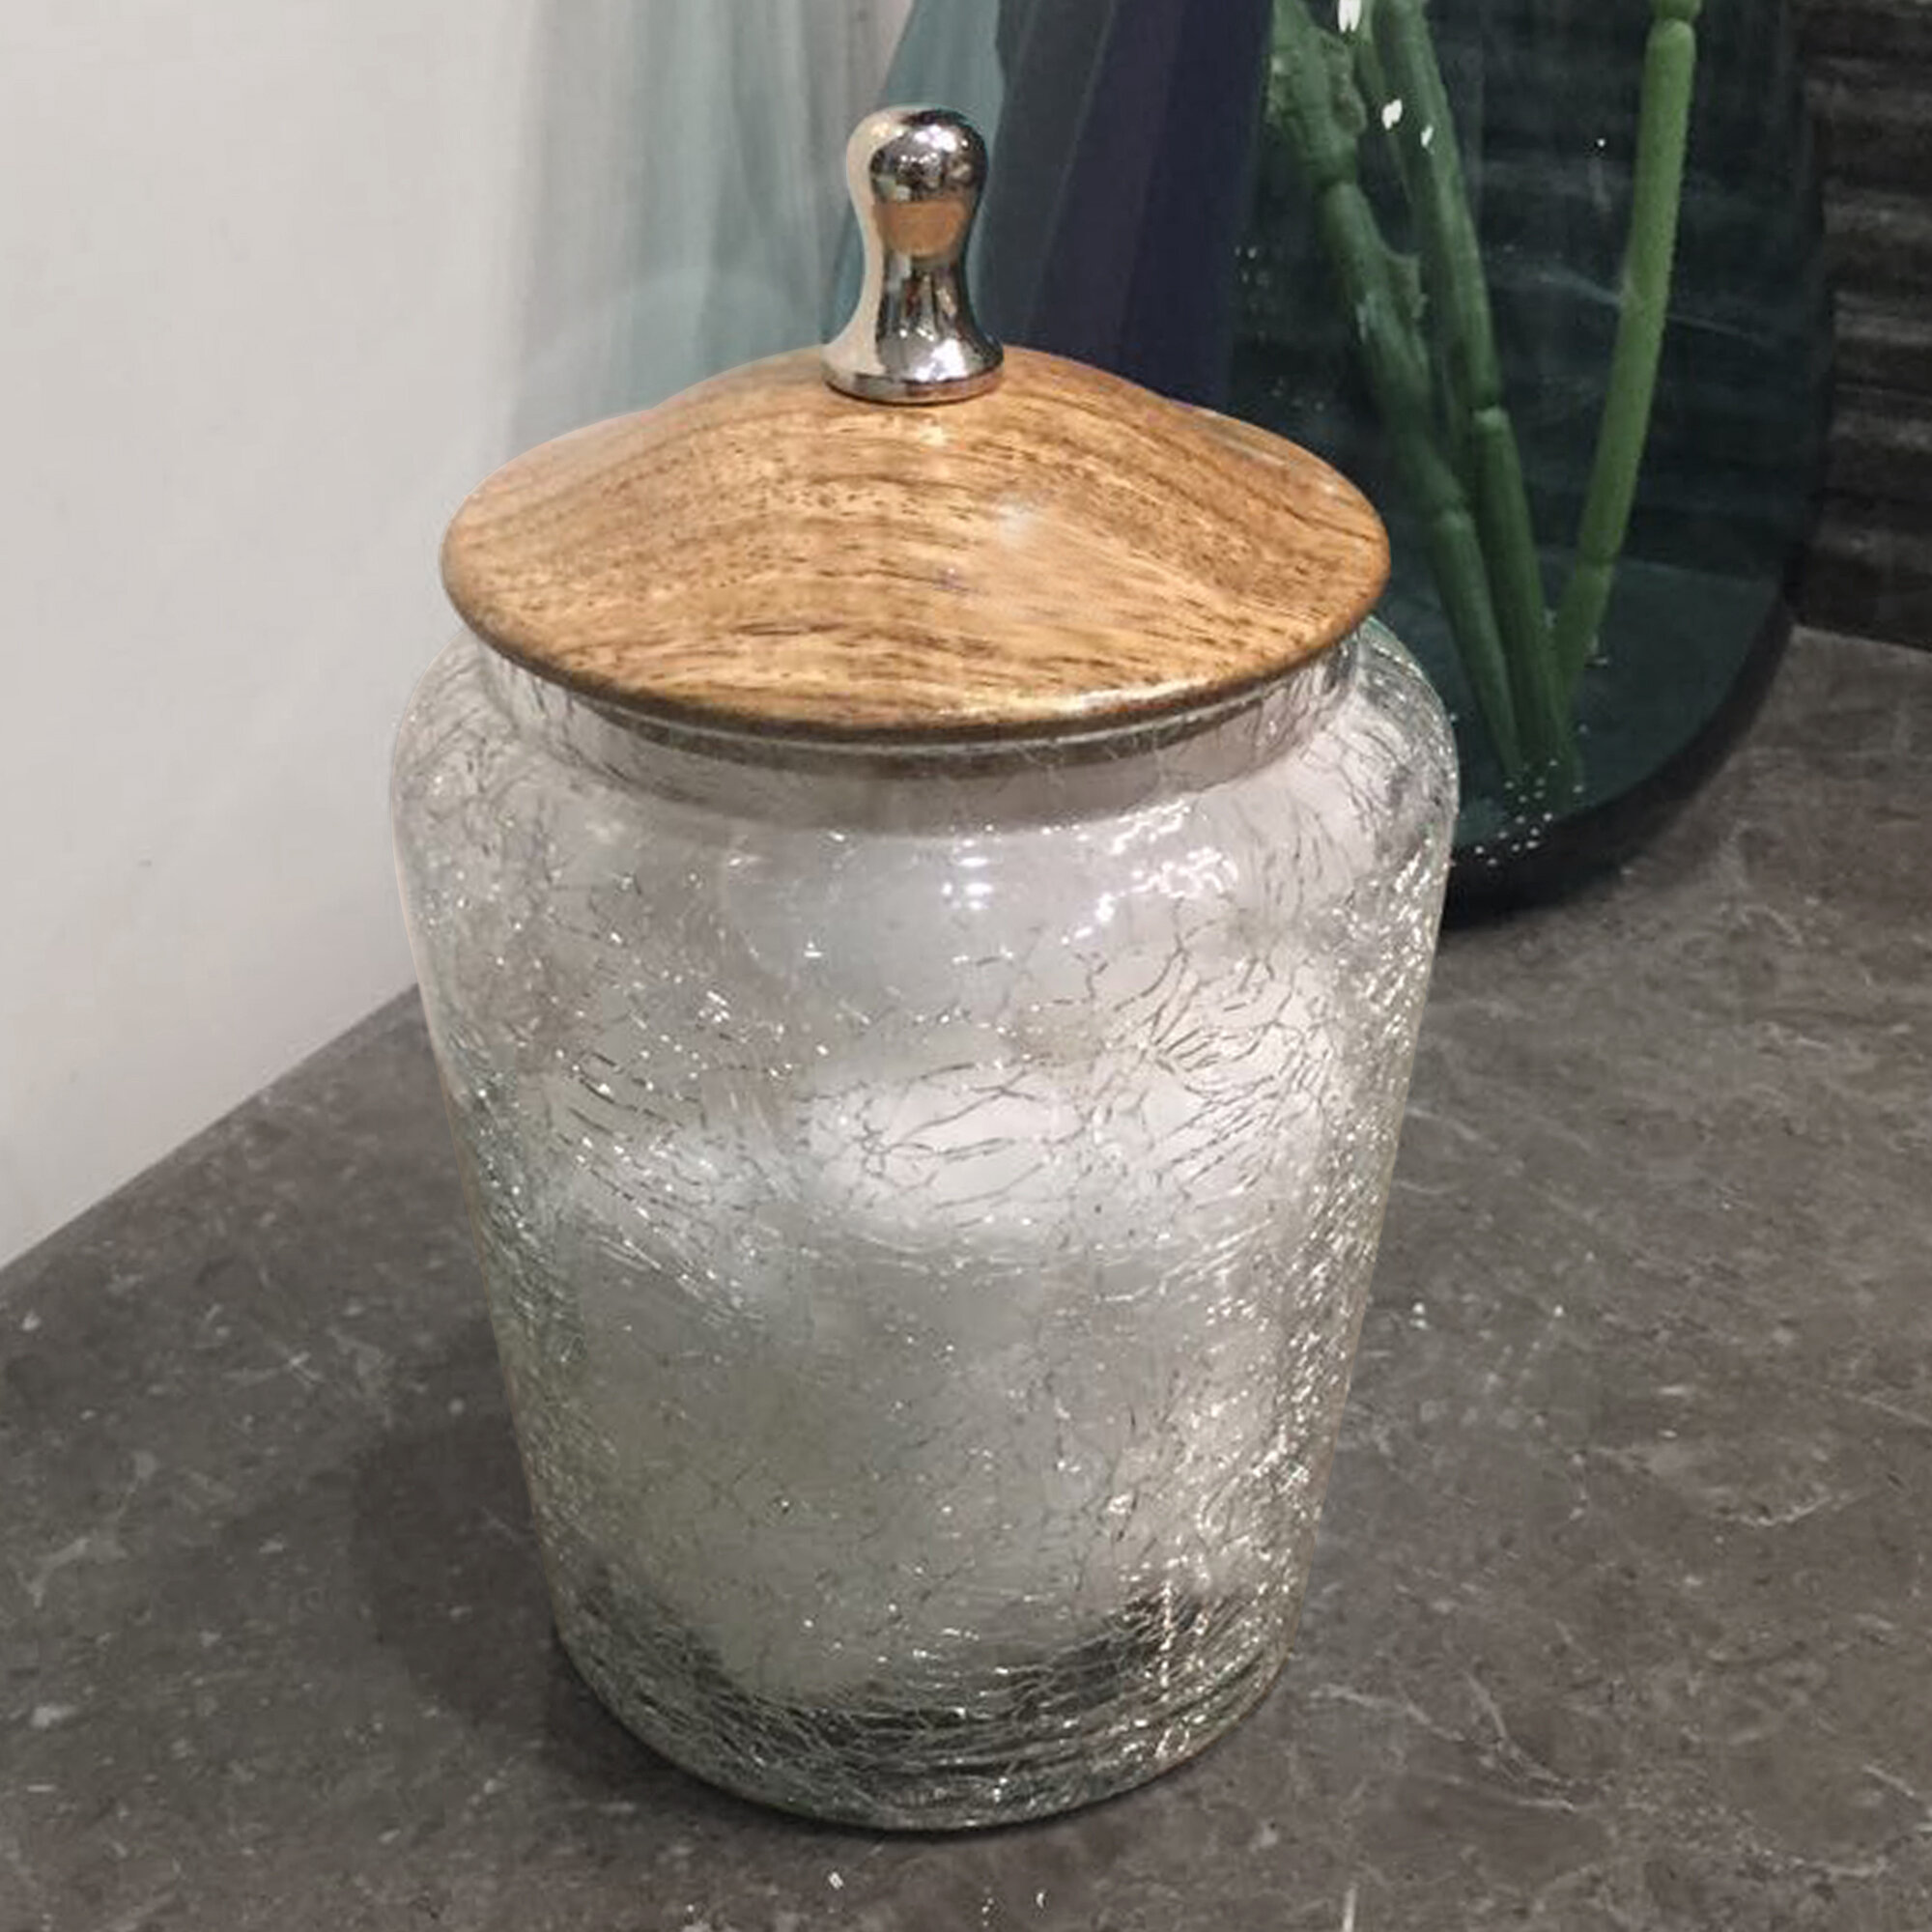 https://assets.wfcdn.com/im/06891856/compr-r85/1546/154611237/crackle-glass-canister-with-wooden-lid-storage-jar.jpg